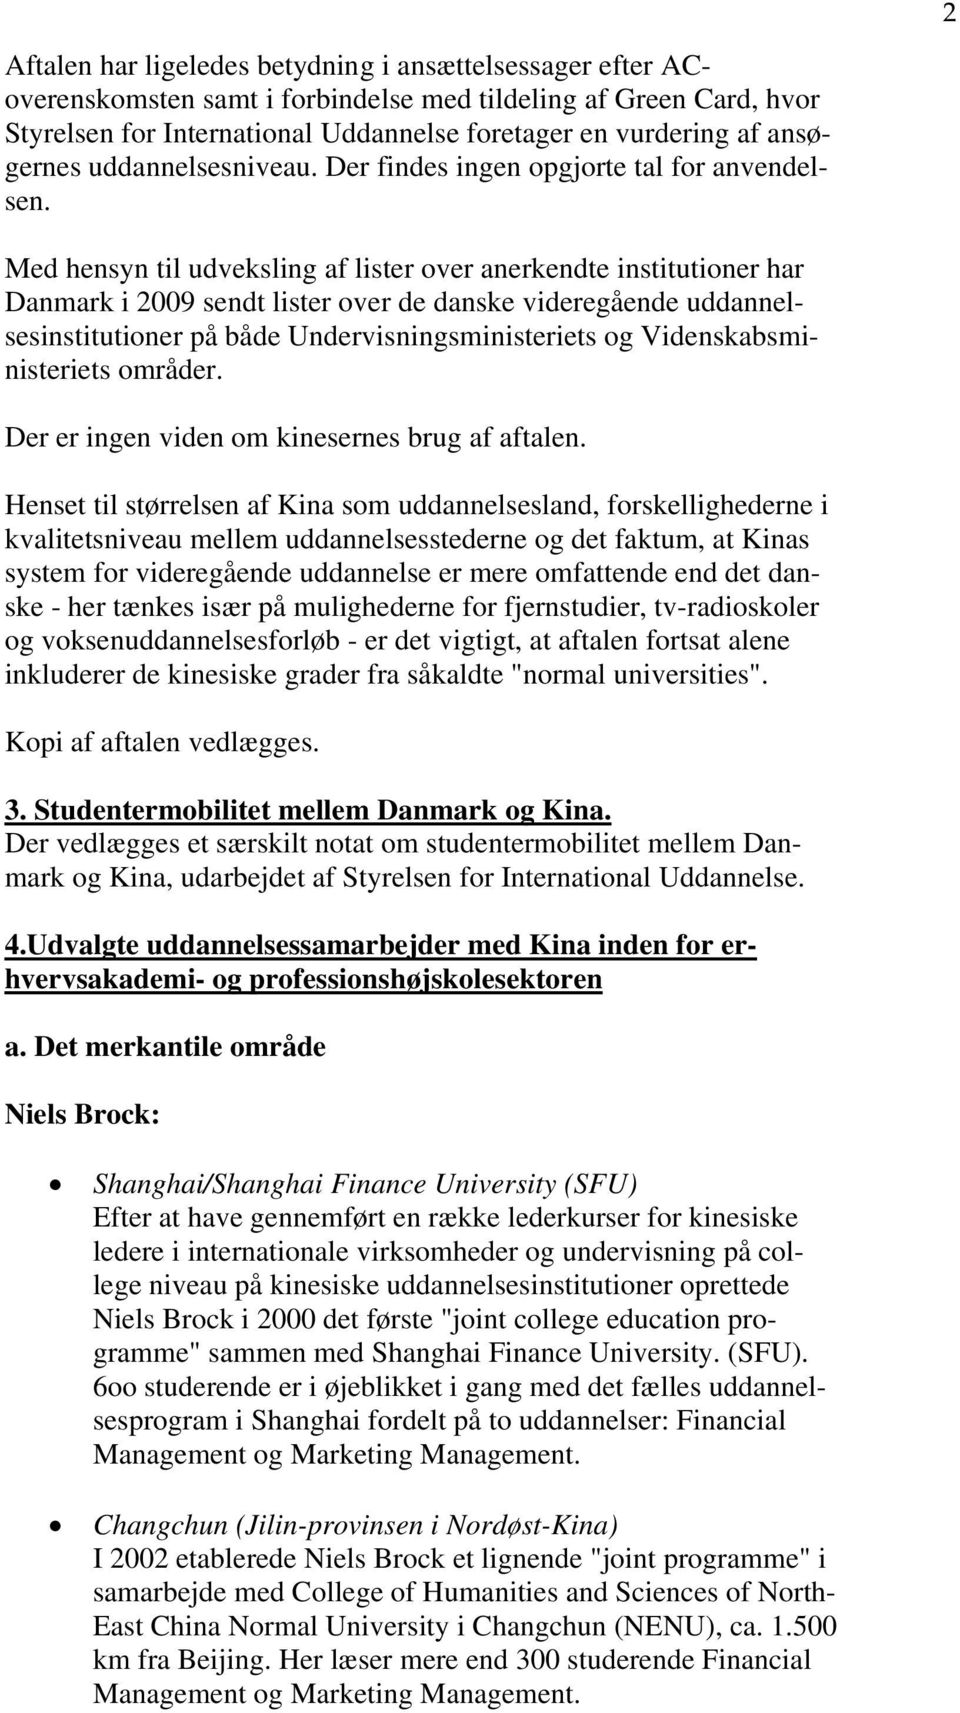 2 Med hensyn til udveksling af lister over anerkendte institutioner har Danmark i 2009 sendt lister over de danske videregående uddannelsesinstitutioner på både Undervisningsministeriets og